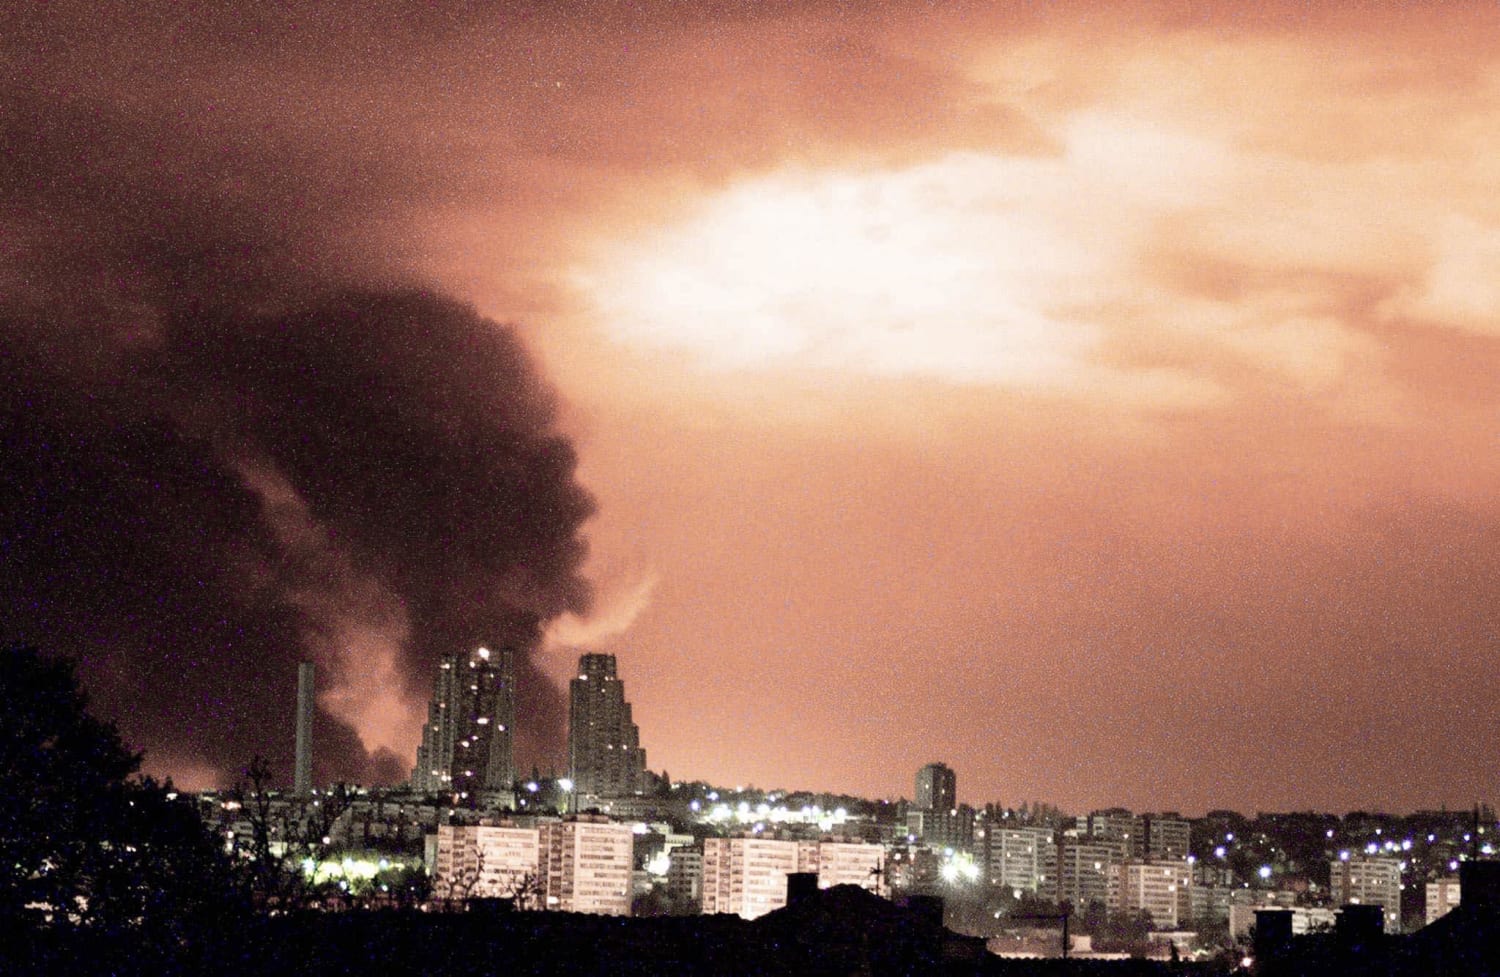 NATO bombing of Belgrade, Yugoslavia in 1999